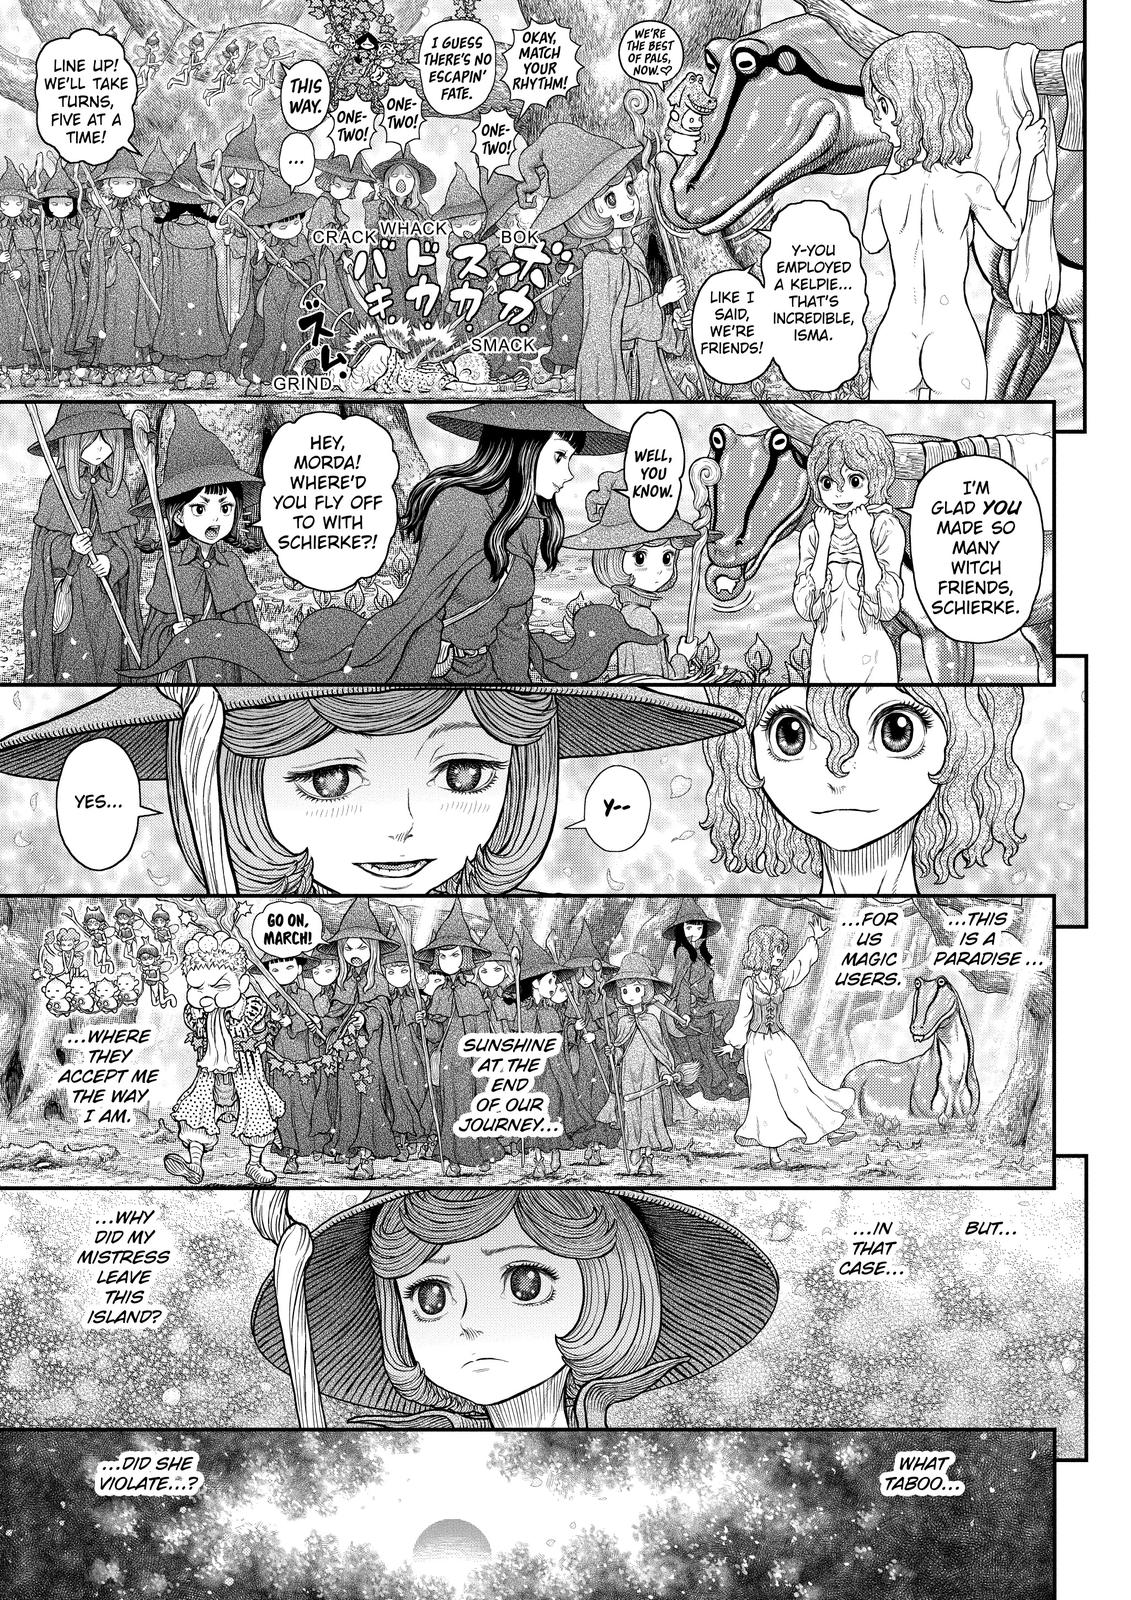 Berserk Manga Chapter 363 image 13